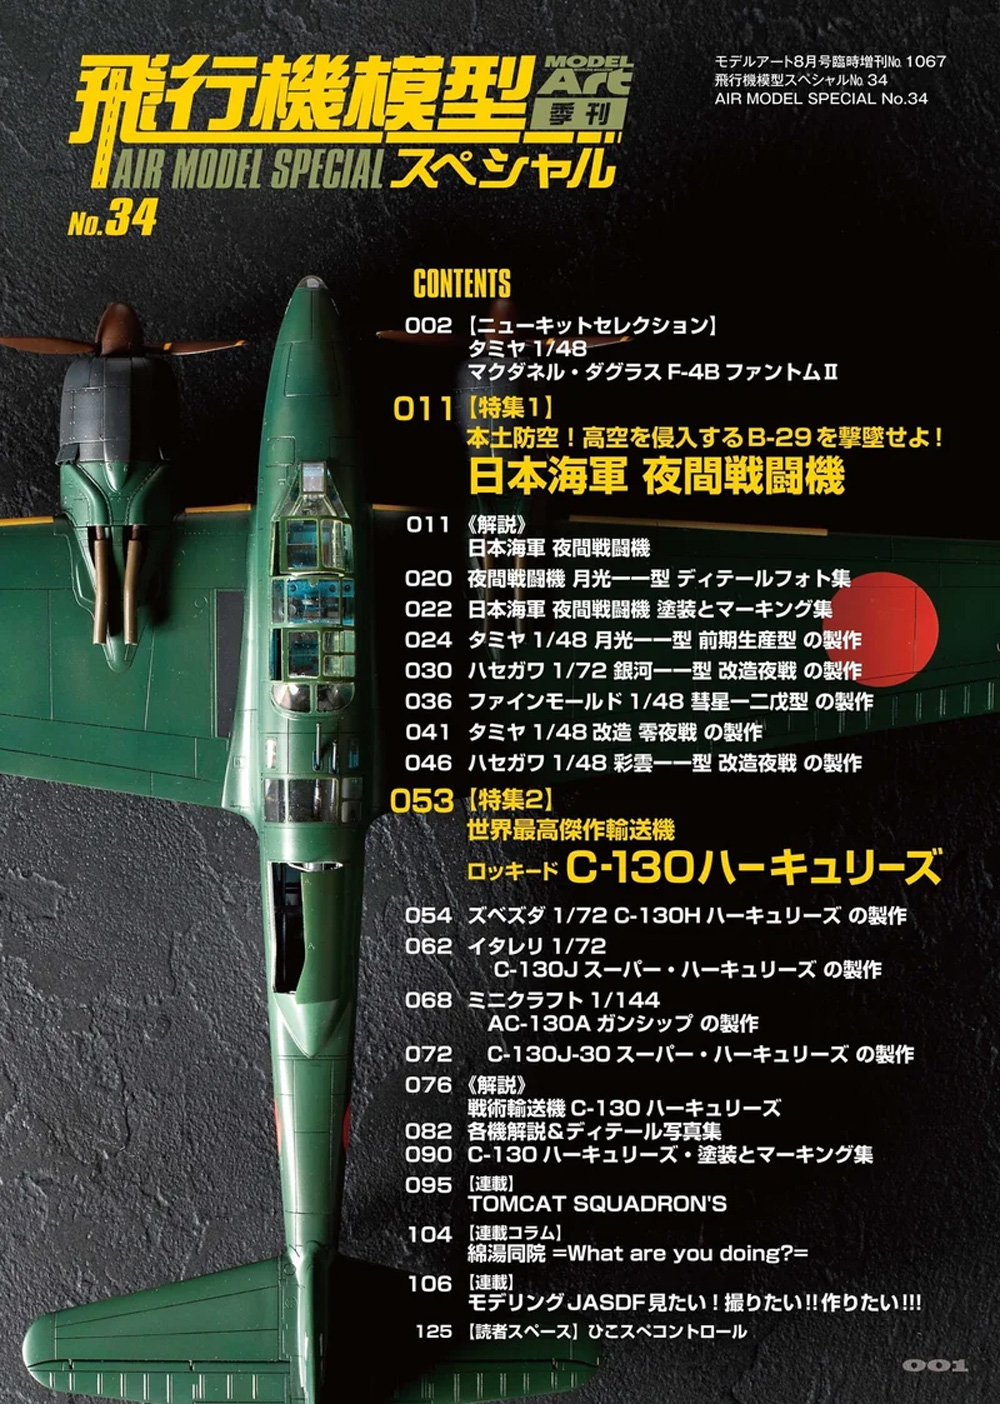 飛行機模型スペシャル 34 日本海軍夜間戦闘機 / 世界最高傑作輸送機 C-130 ハーキュリーズ 本 (モデルアート 飛行機模型スペシャル No.034) 商品画像_1